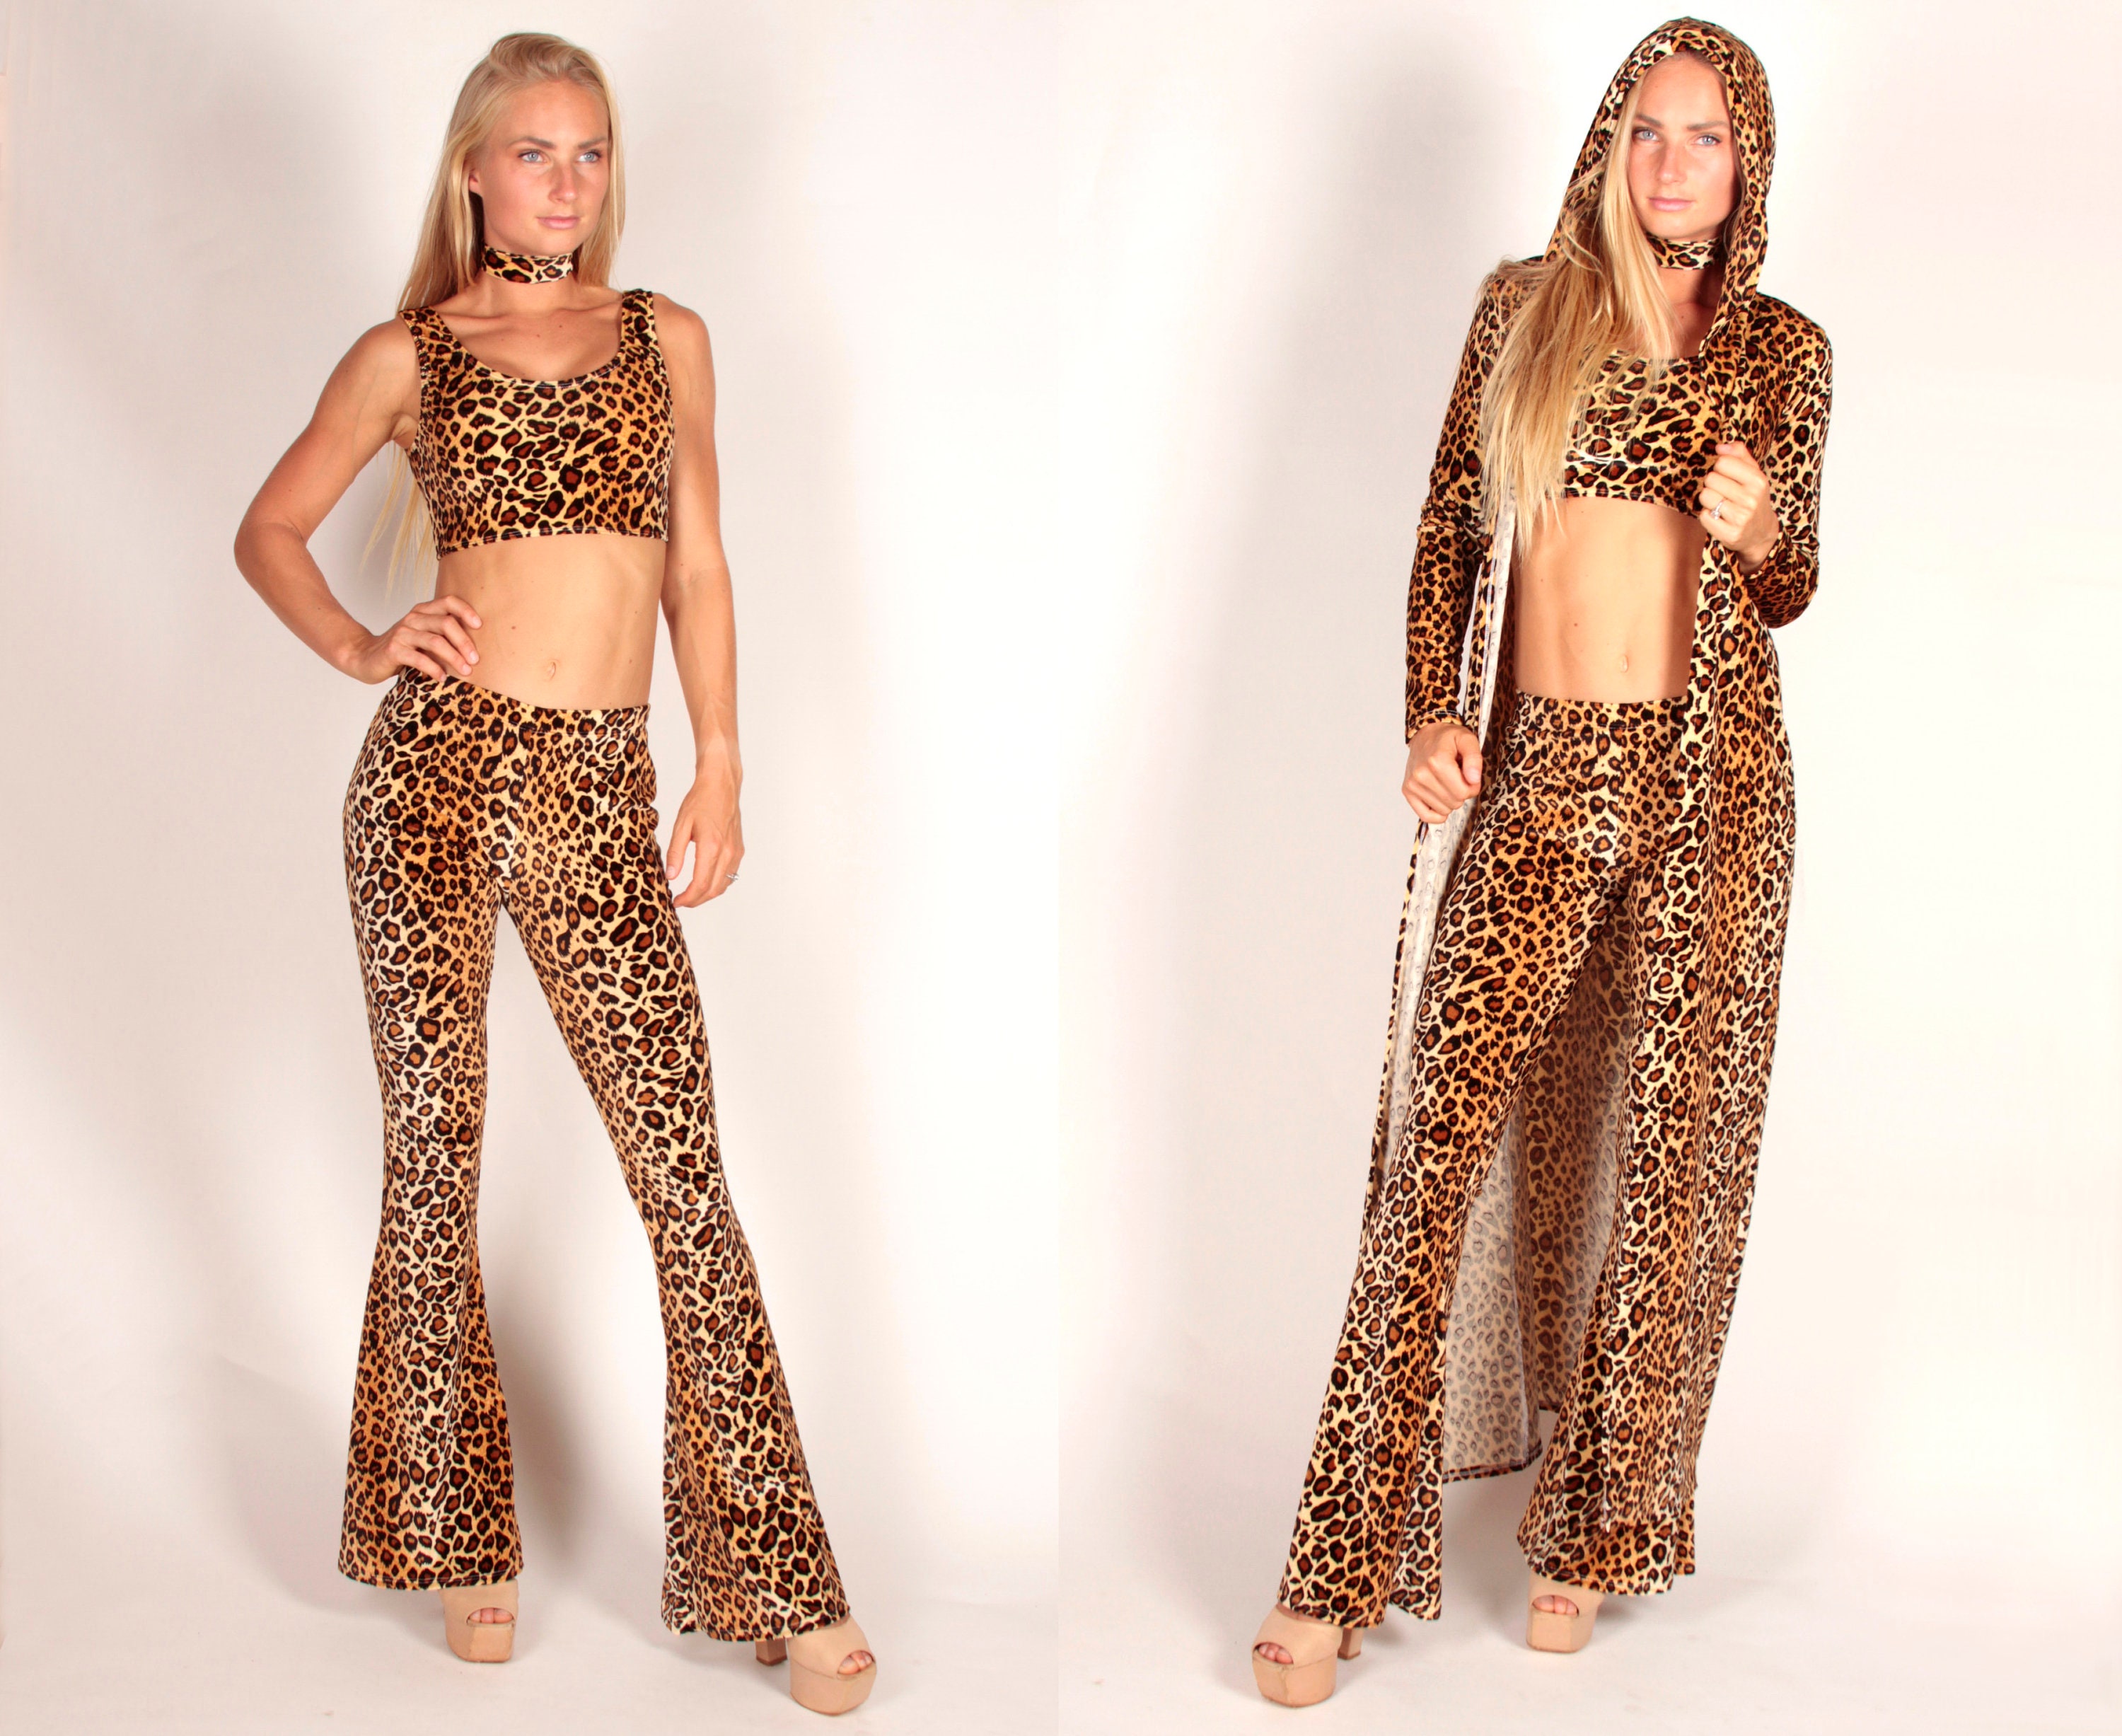 Shania Twain Leopard Costume - Etsy Canada